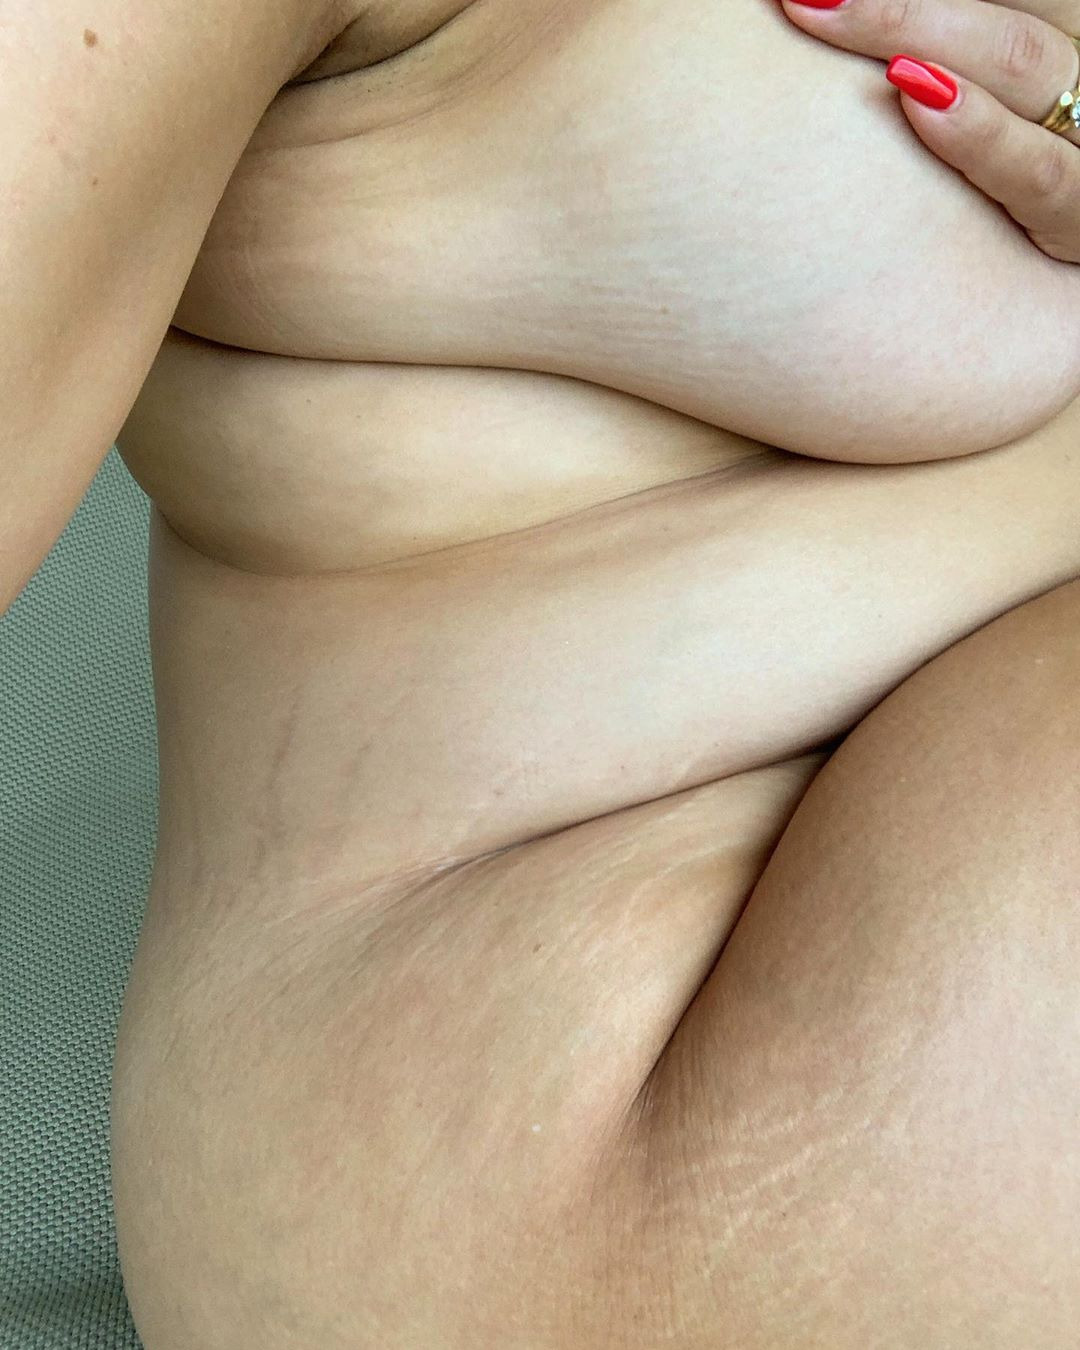 Άσλεϊ Γκράχαμ: Η γυμνή φωτογραφία με τις ραγάδες της εγκυμοσύνης